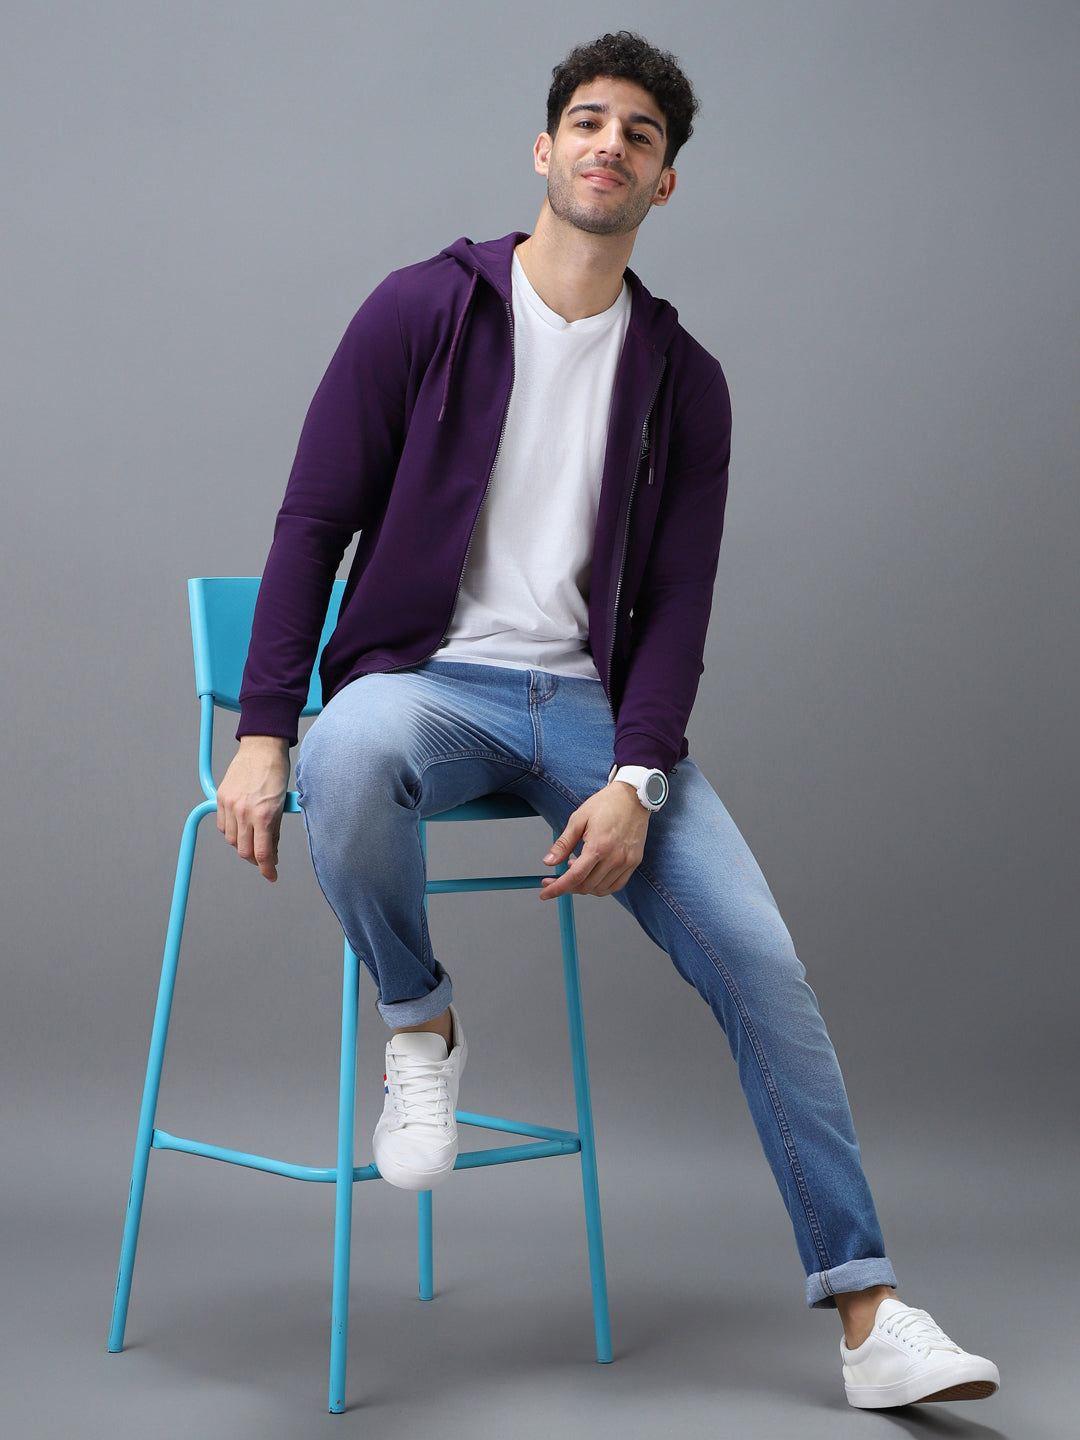 Men's Purple Cotton Solid Zippered Hooded Neck Sweatshirt